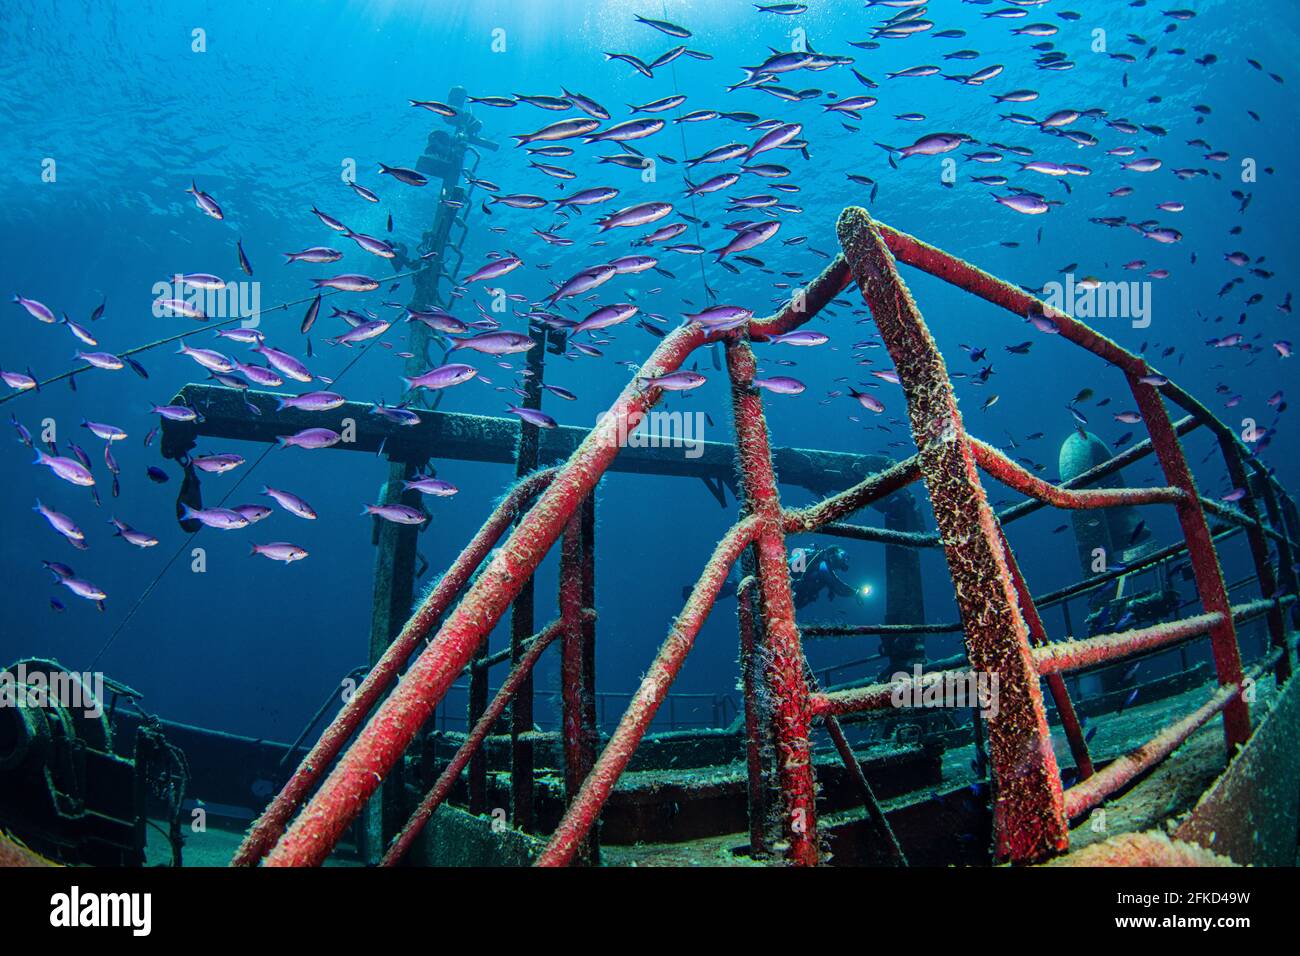 The Bahamas, Nassau, Underwater view of fish swimming around shipwreck Stock Photo